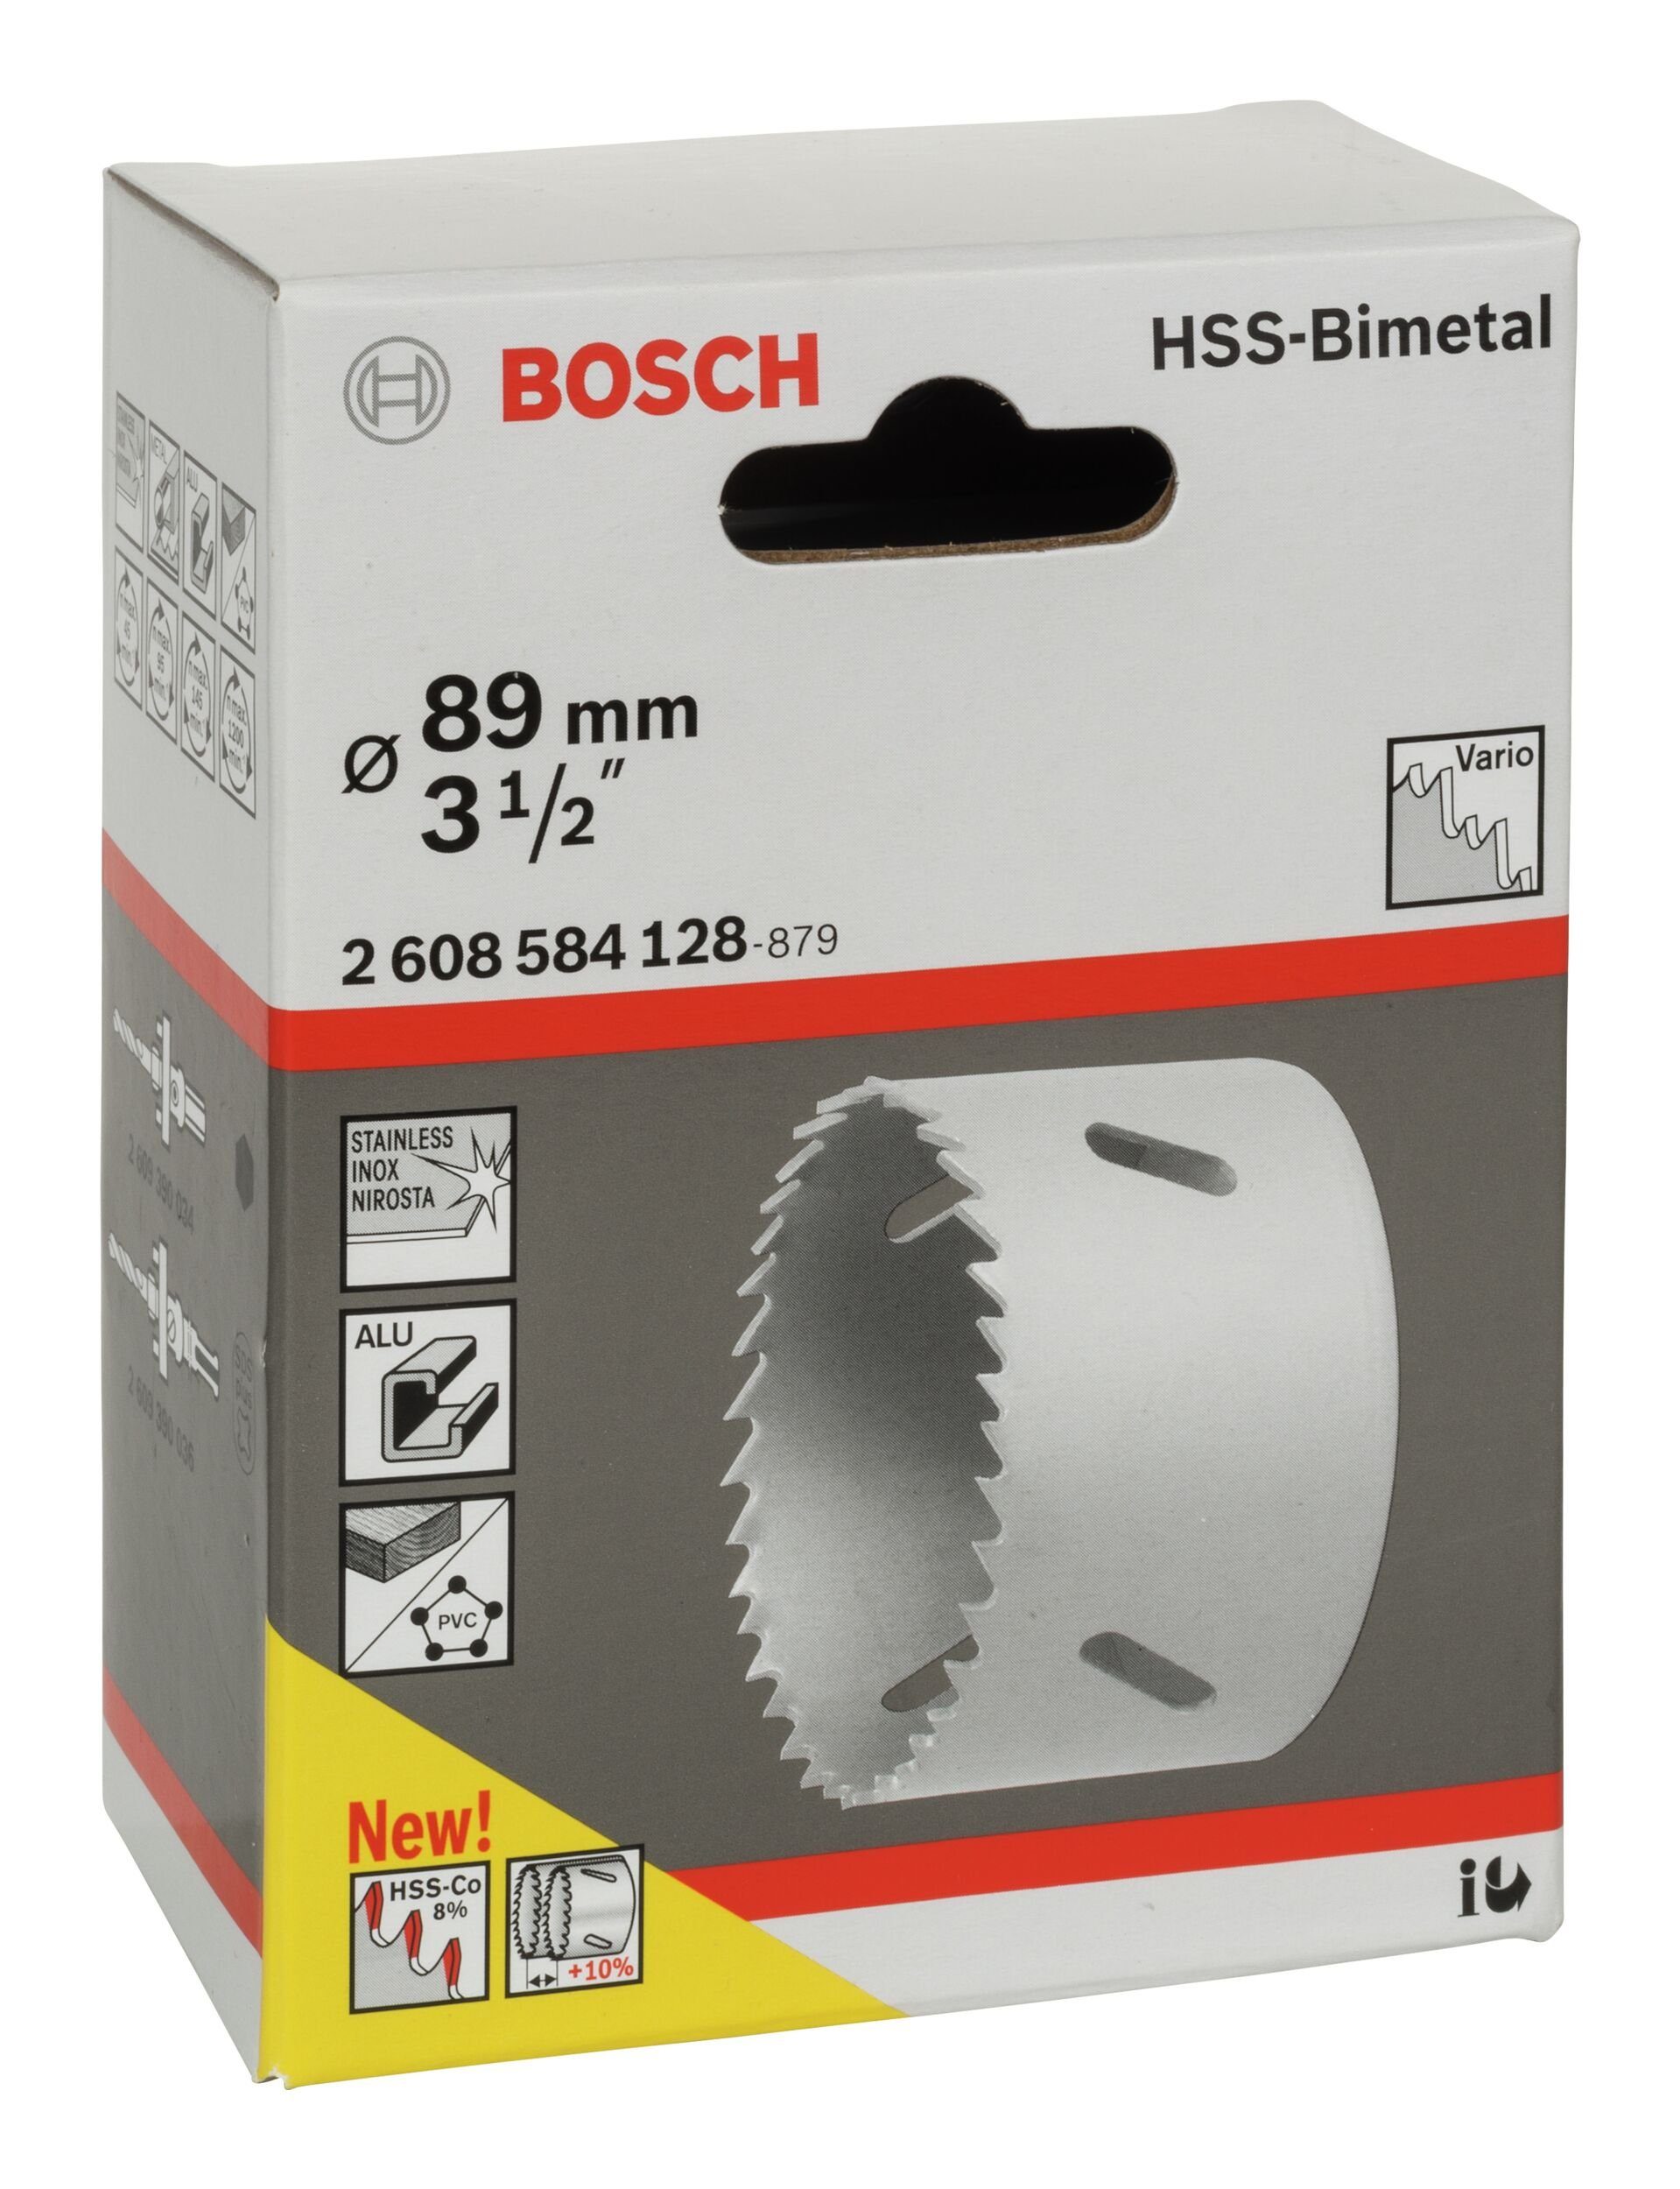 BOSCH Lochsäge, Ø 89 für / - mm, 1/2" HSS-Bimetall Standardadapter 3